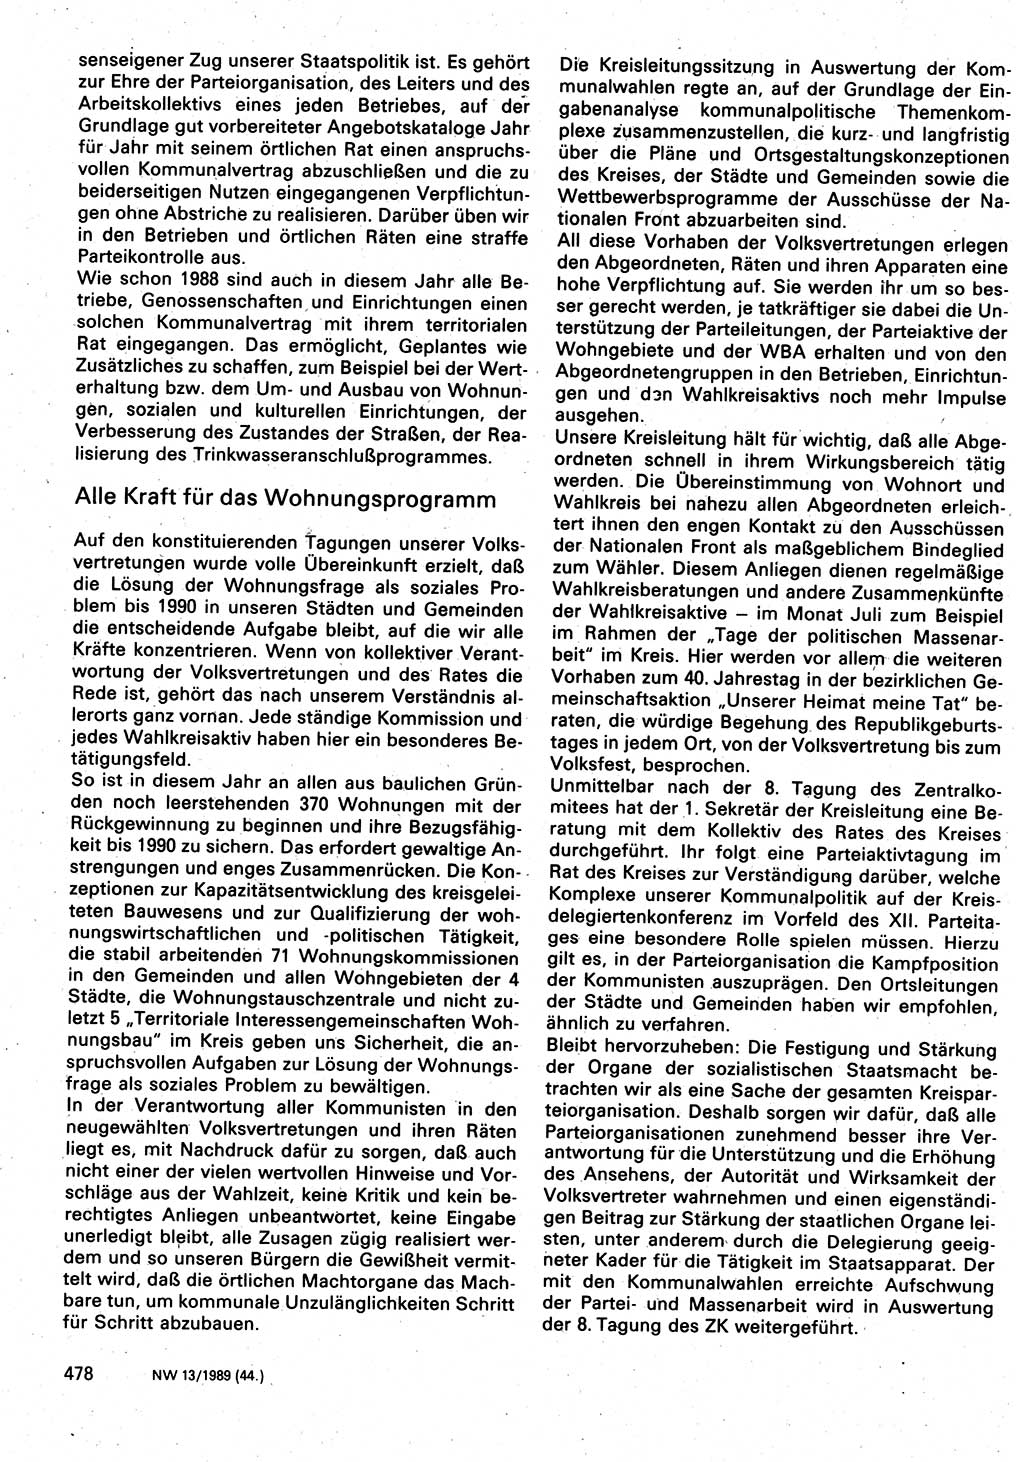 Neuer Weg (NW), Organ des Zentralkomitees (ZK) der SED (Sozialistische Einheitspartei Deutschlands) für Fragen des Parteilebens, 44. Jahrgang [Deutsche Demokratische Republik (DDR)] 1989, Seite 478 (NW ZK SED DDR 1989, S. 478)